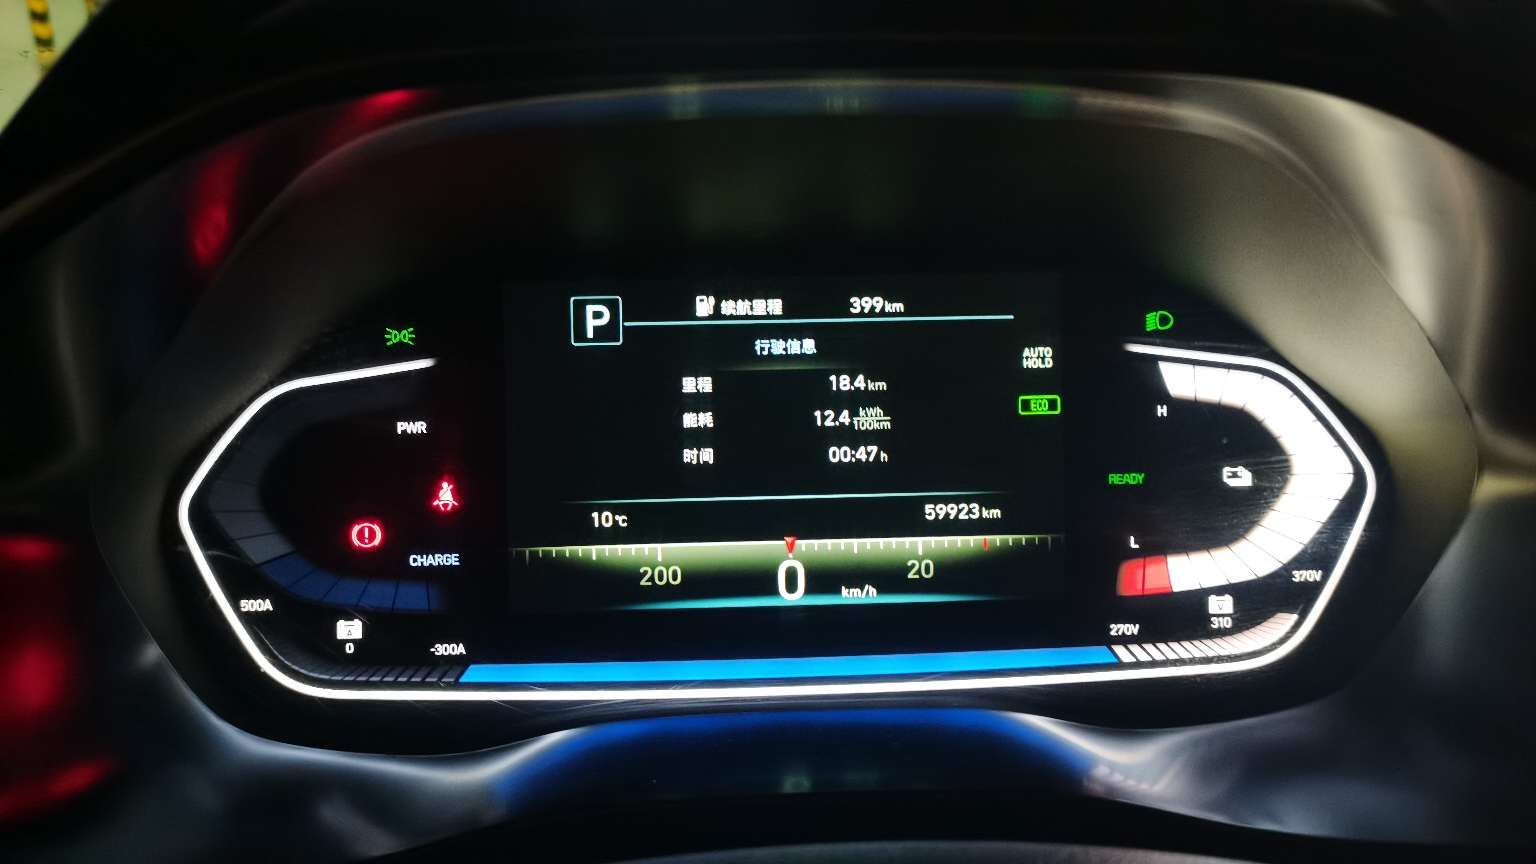 城市:北京
车型:菲斯塔电动
电耗:12.7